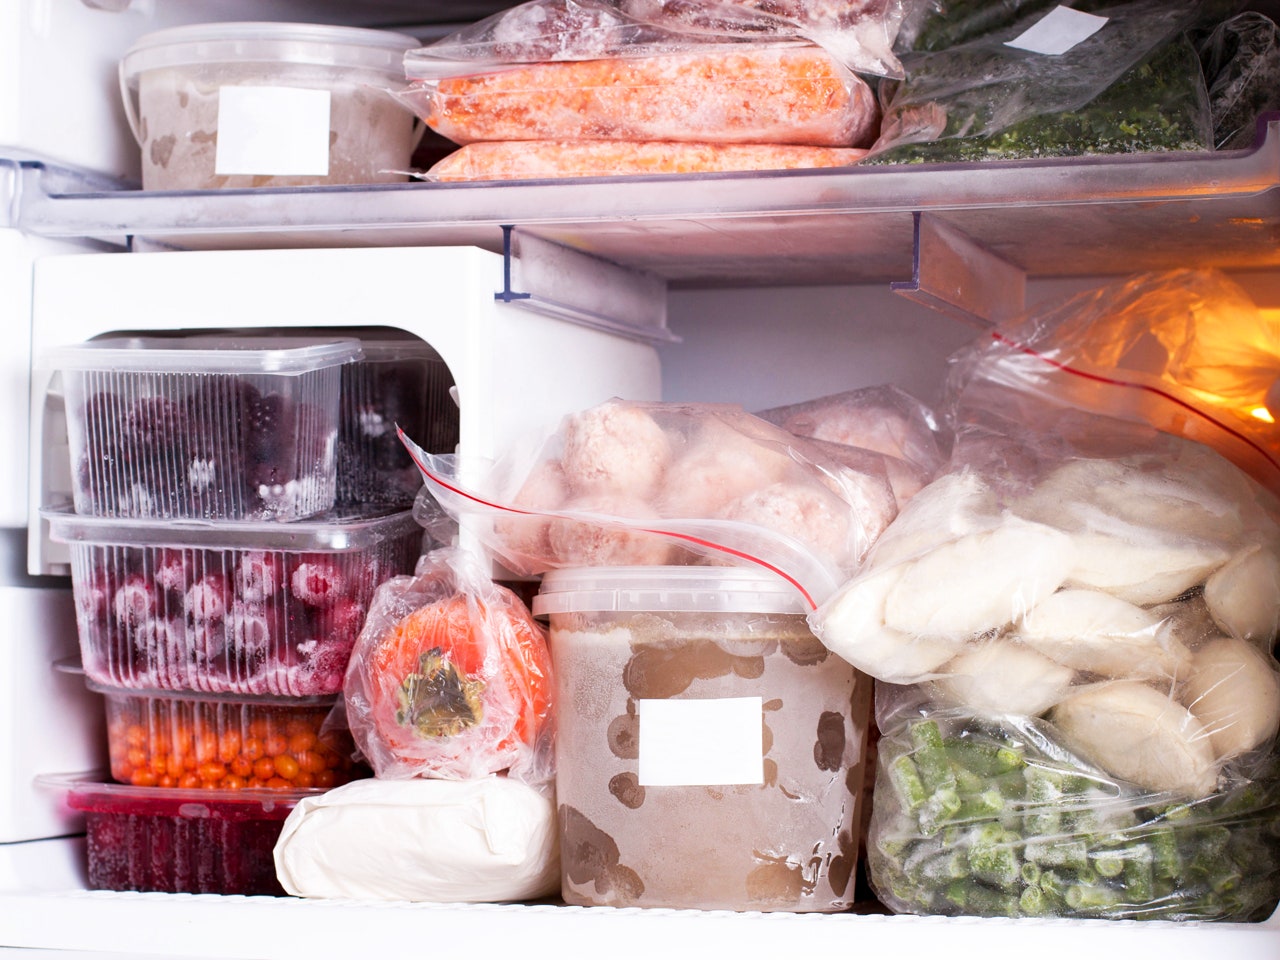 Nên để nhiệt độ bao nhiêu khi bảo quản thực phẩm bằng tủ lạnh? Hướng dẫn của chuyên gia giúp giữ cho thức ăn tươi ngon lâu hơn và an toàn - Ảnh 3.